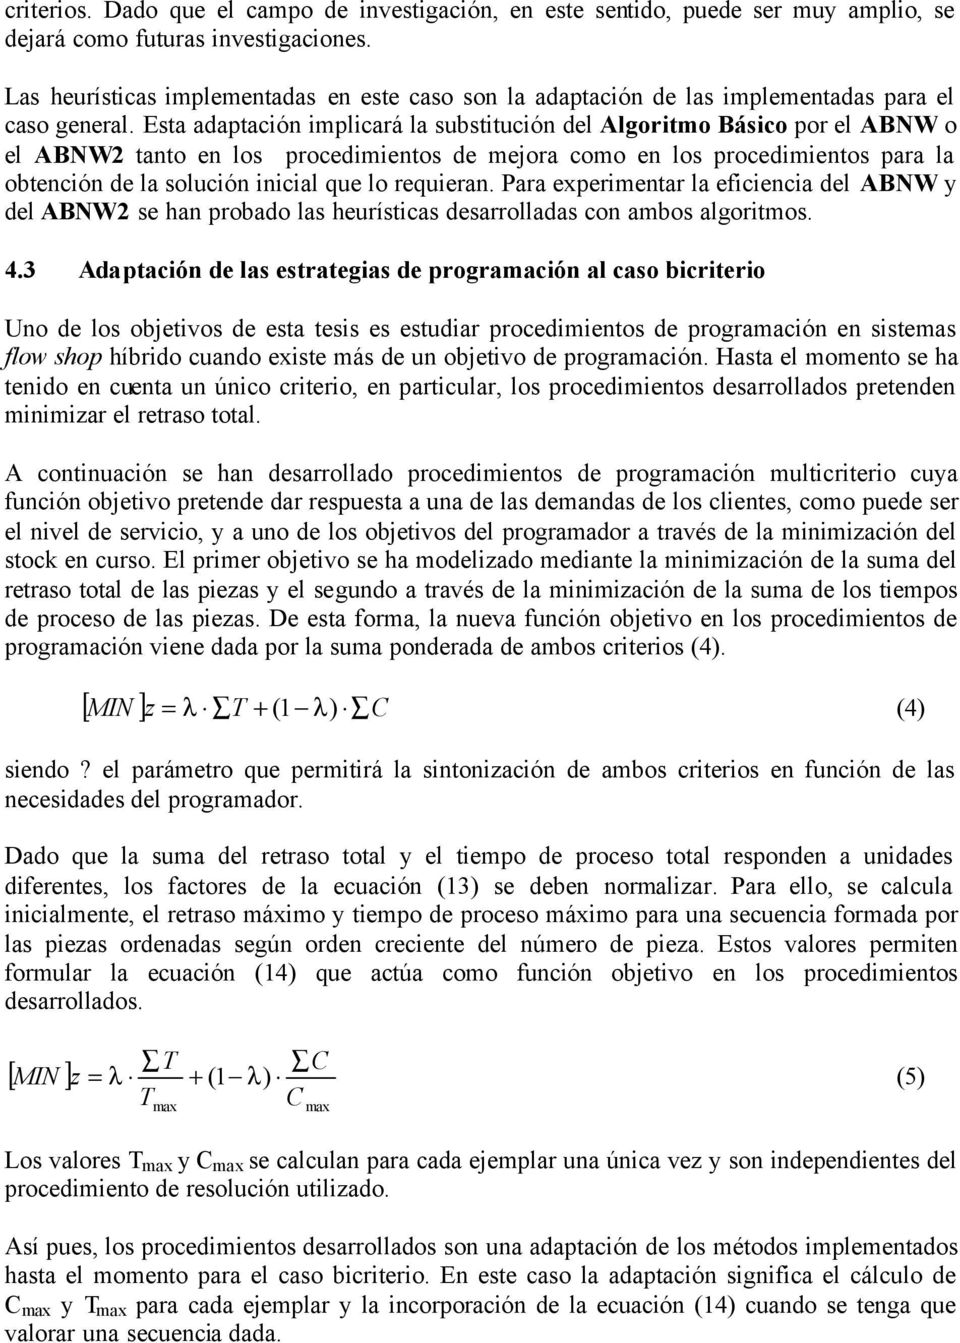 Para expermentar la efcenca del ABNW y del ABNW2 e han probado la heurítca dearrollada con ambo algortmo. 4.